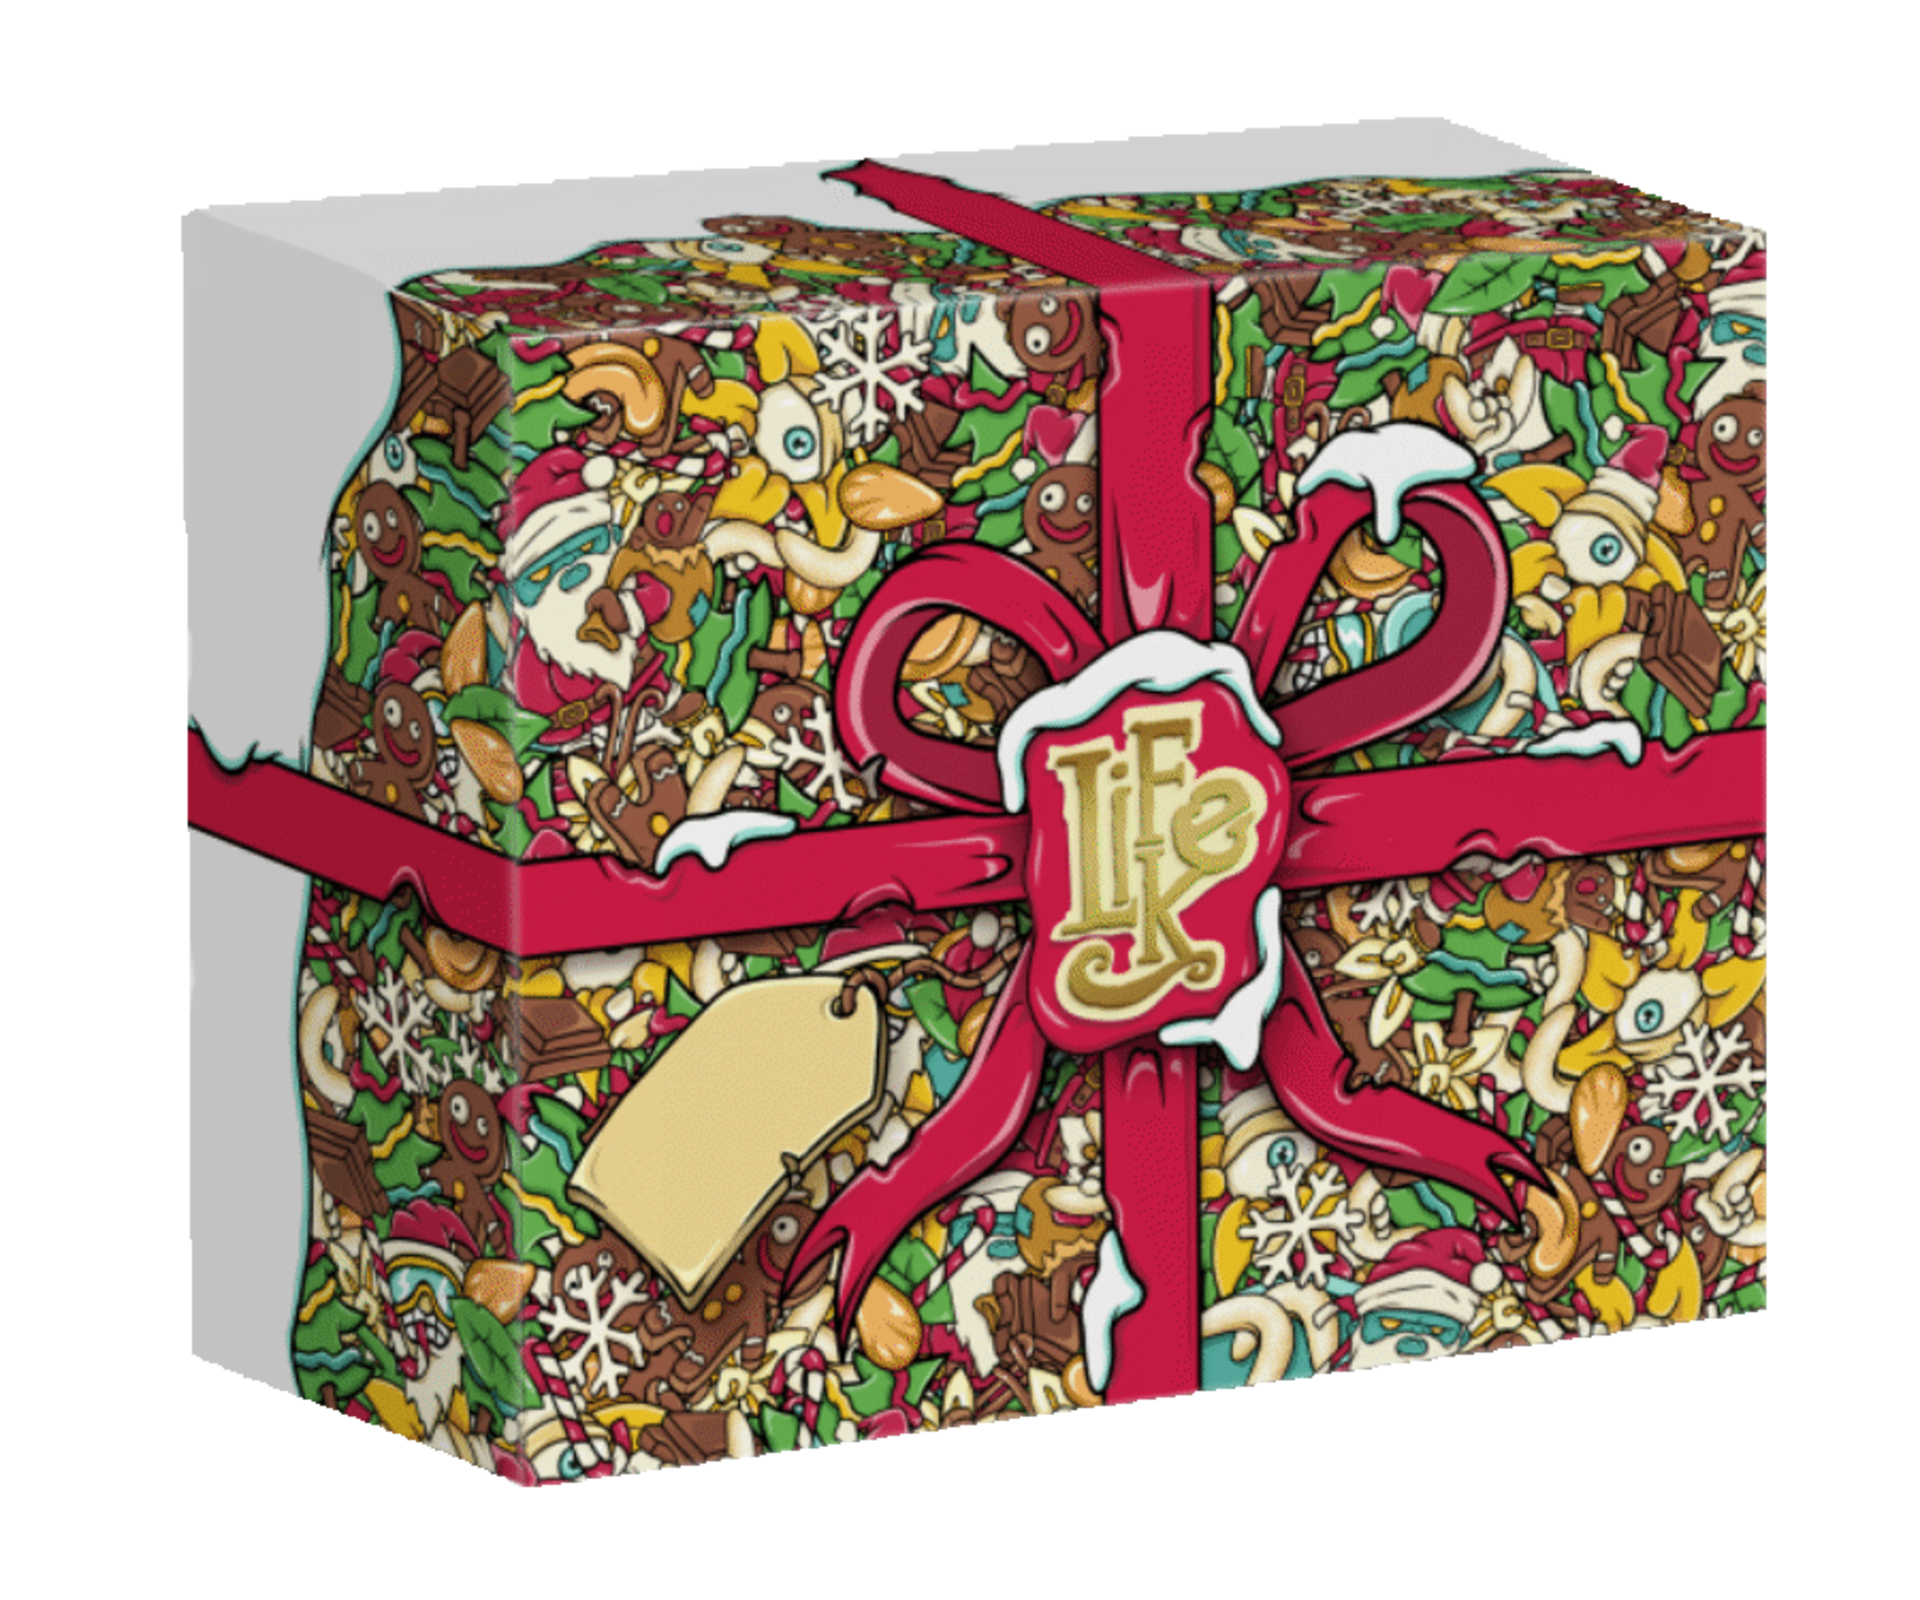 LifeLike Vánoční krabička 1250 g